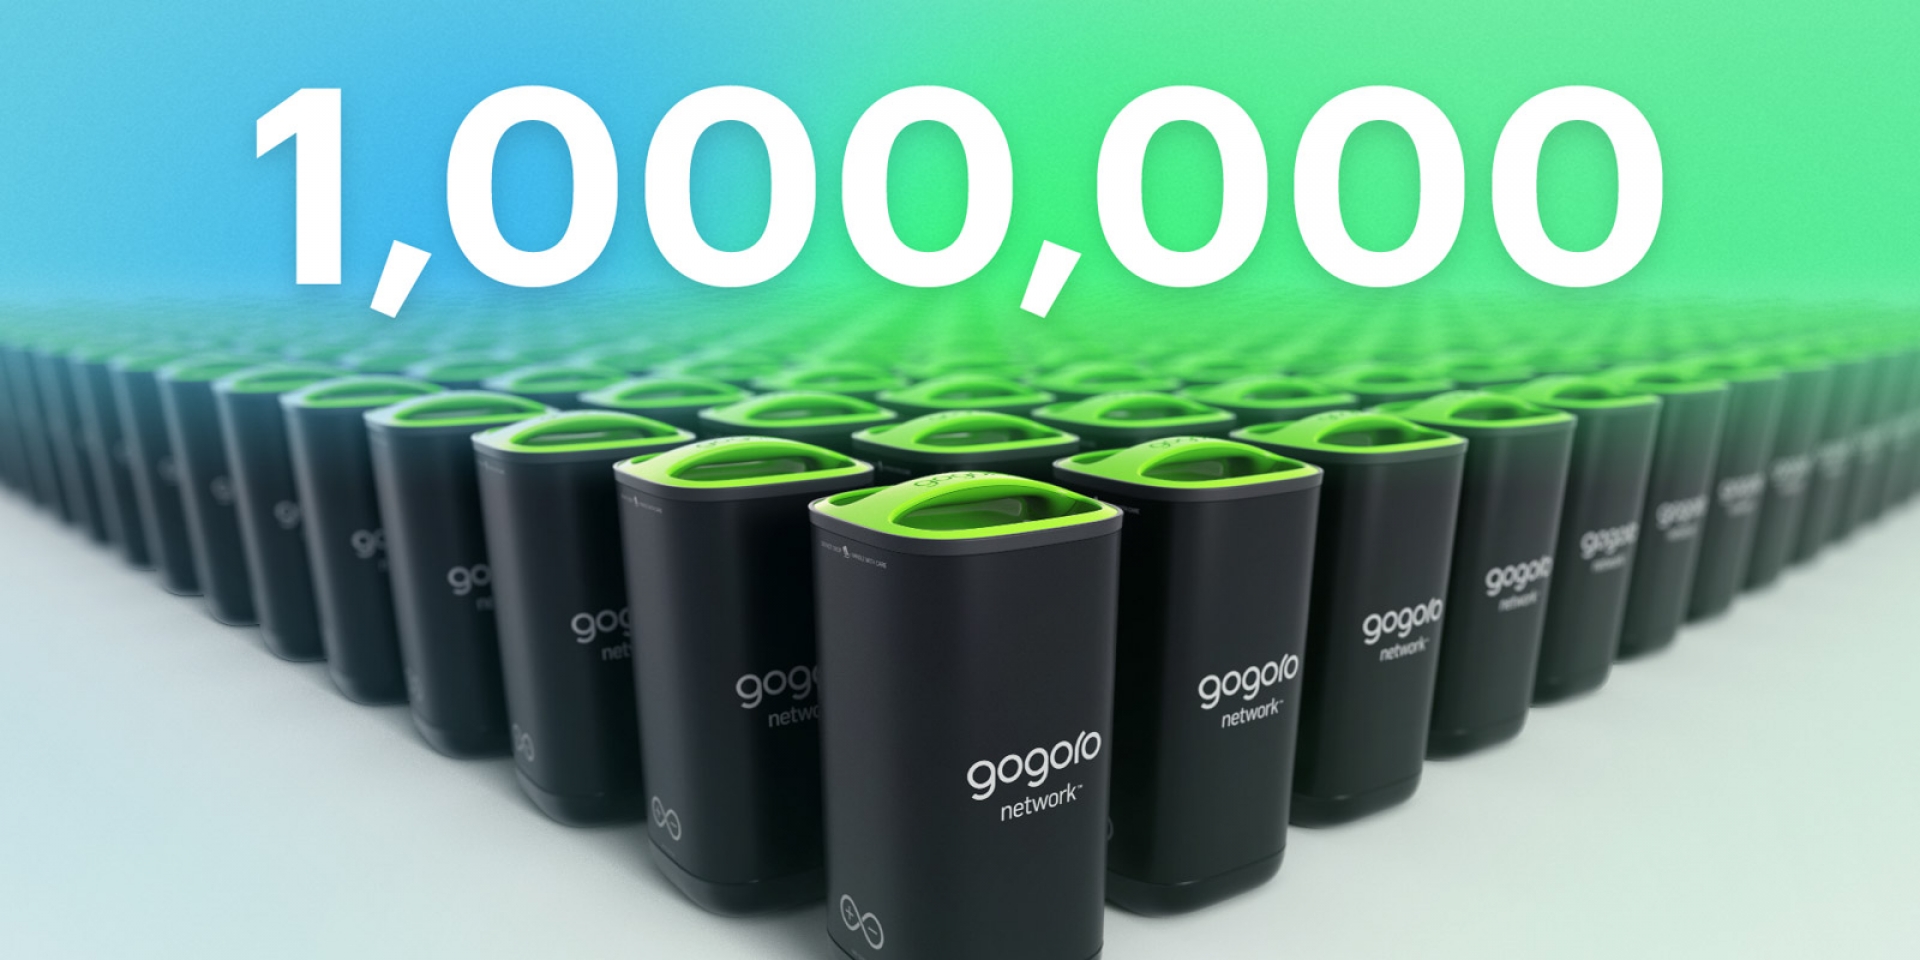 第 100 萬顆 Gogoro電池 3月投放台灣市場  邀請用戶共同決定投放城市